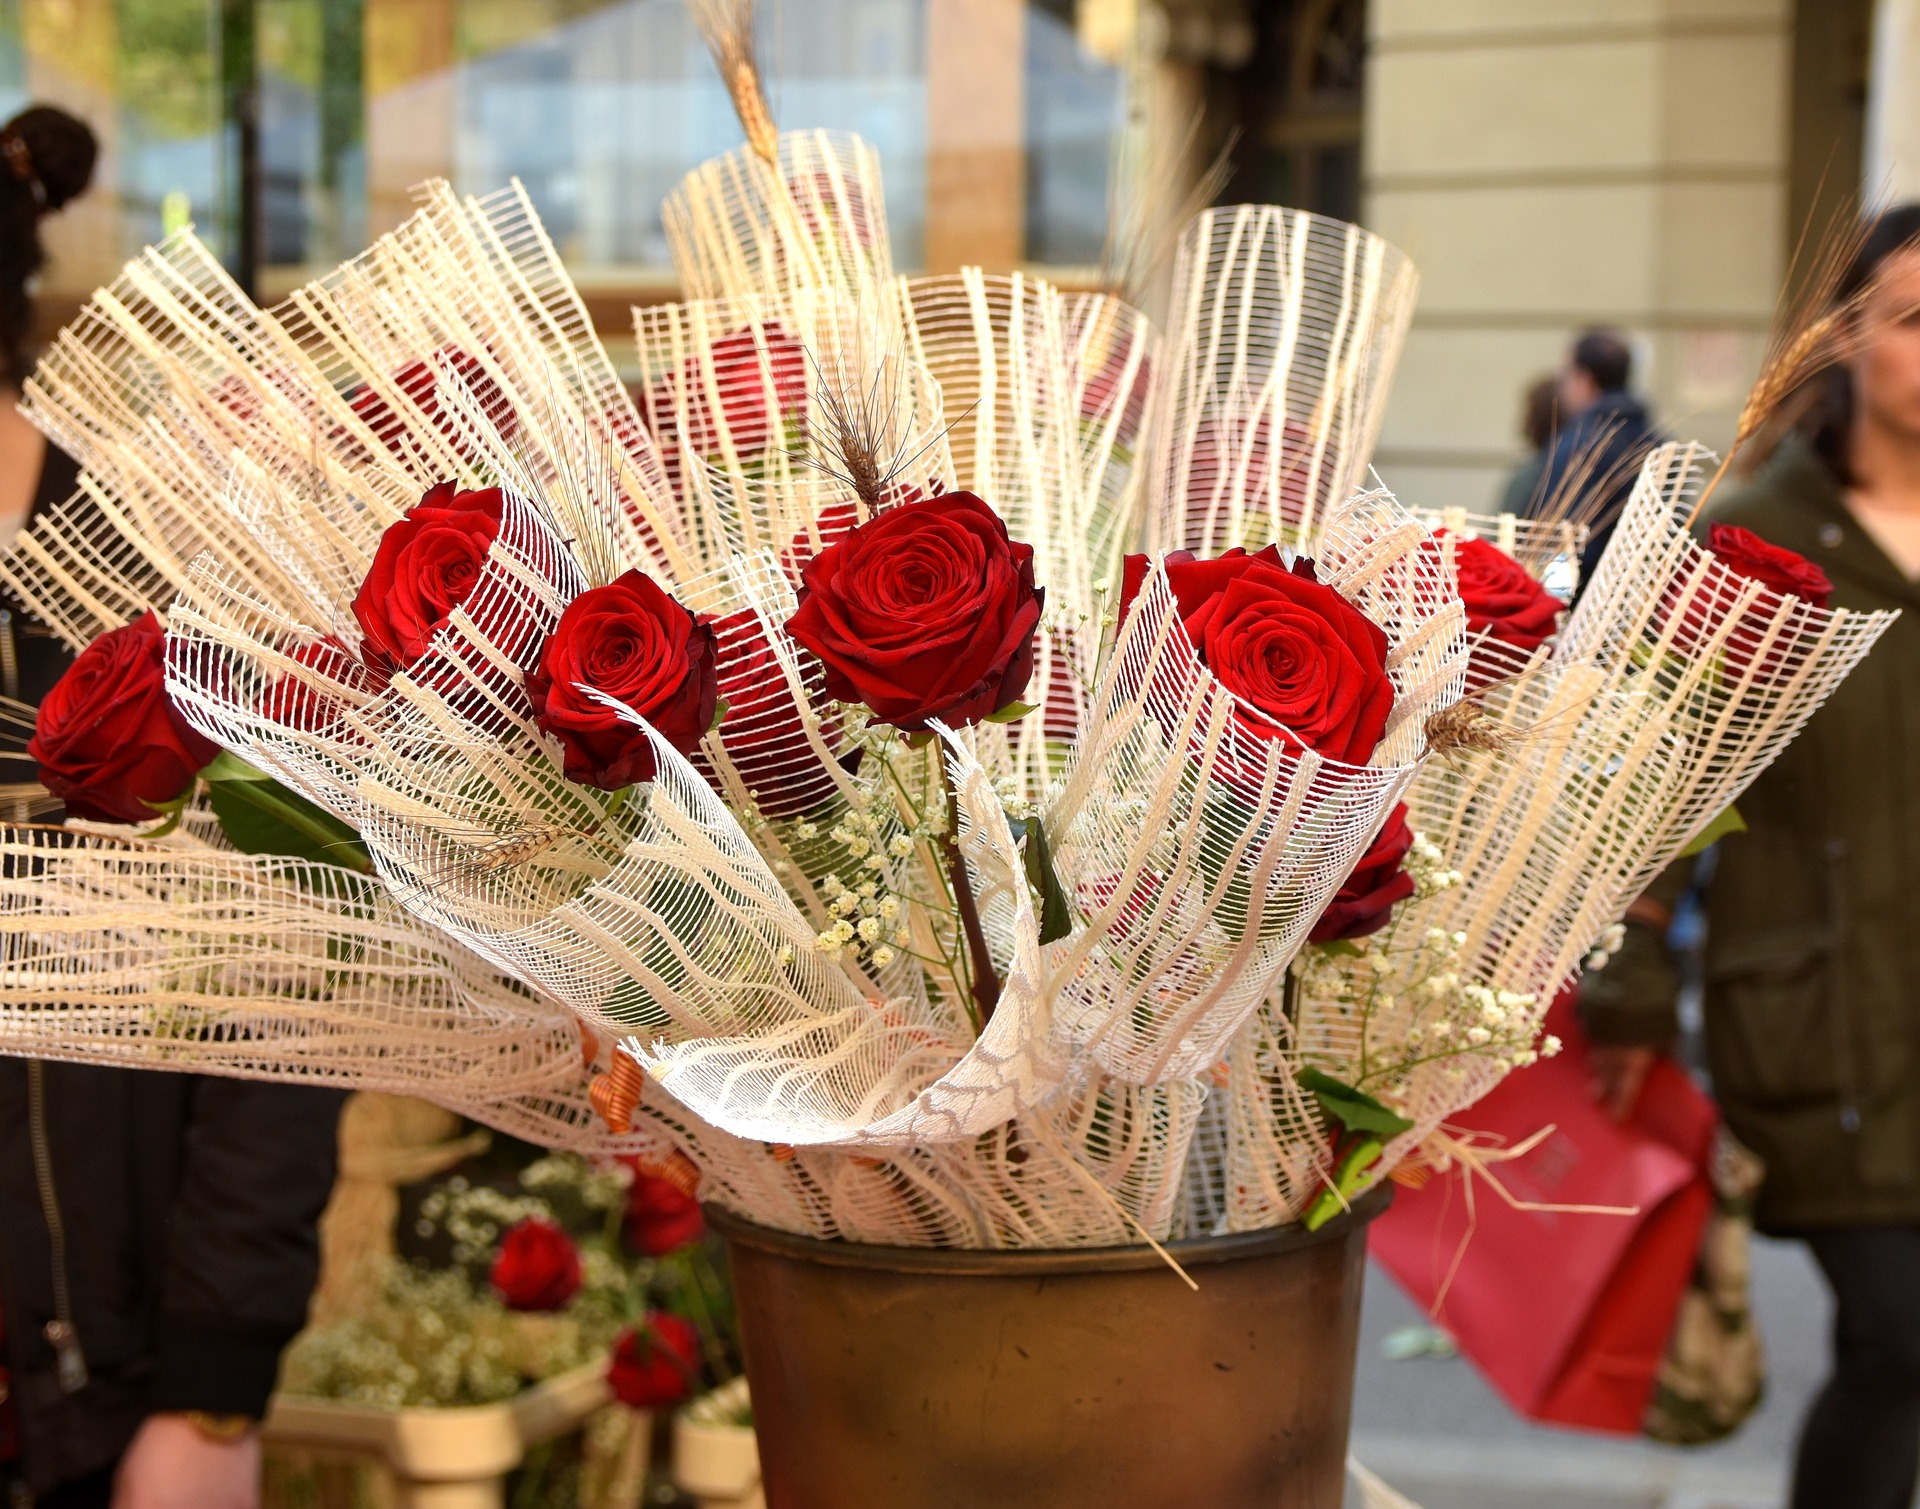 Red roses of Sant Jordi Day